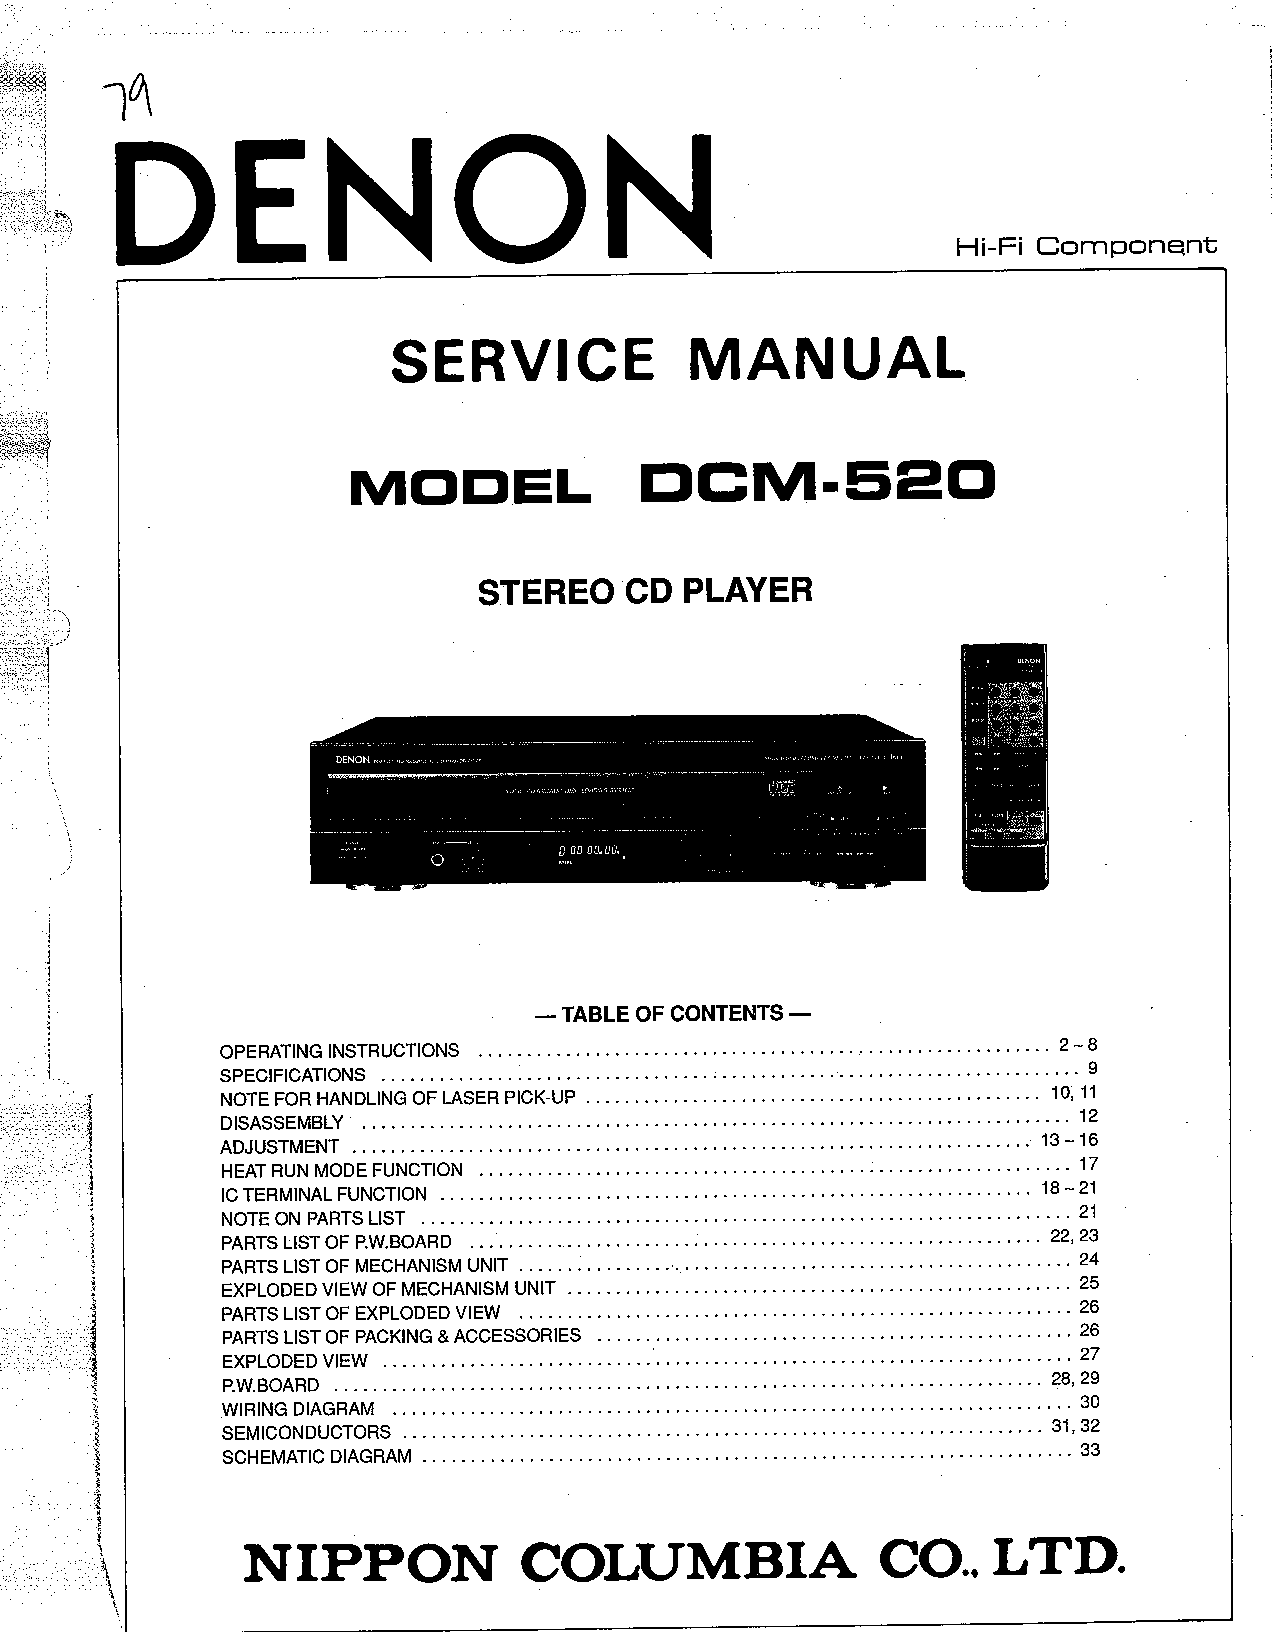 Denon DCM-520 Service Manual